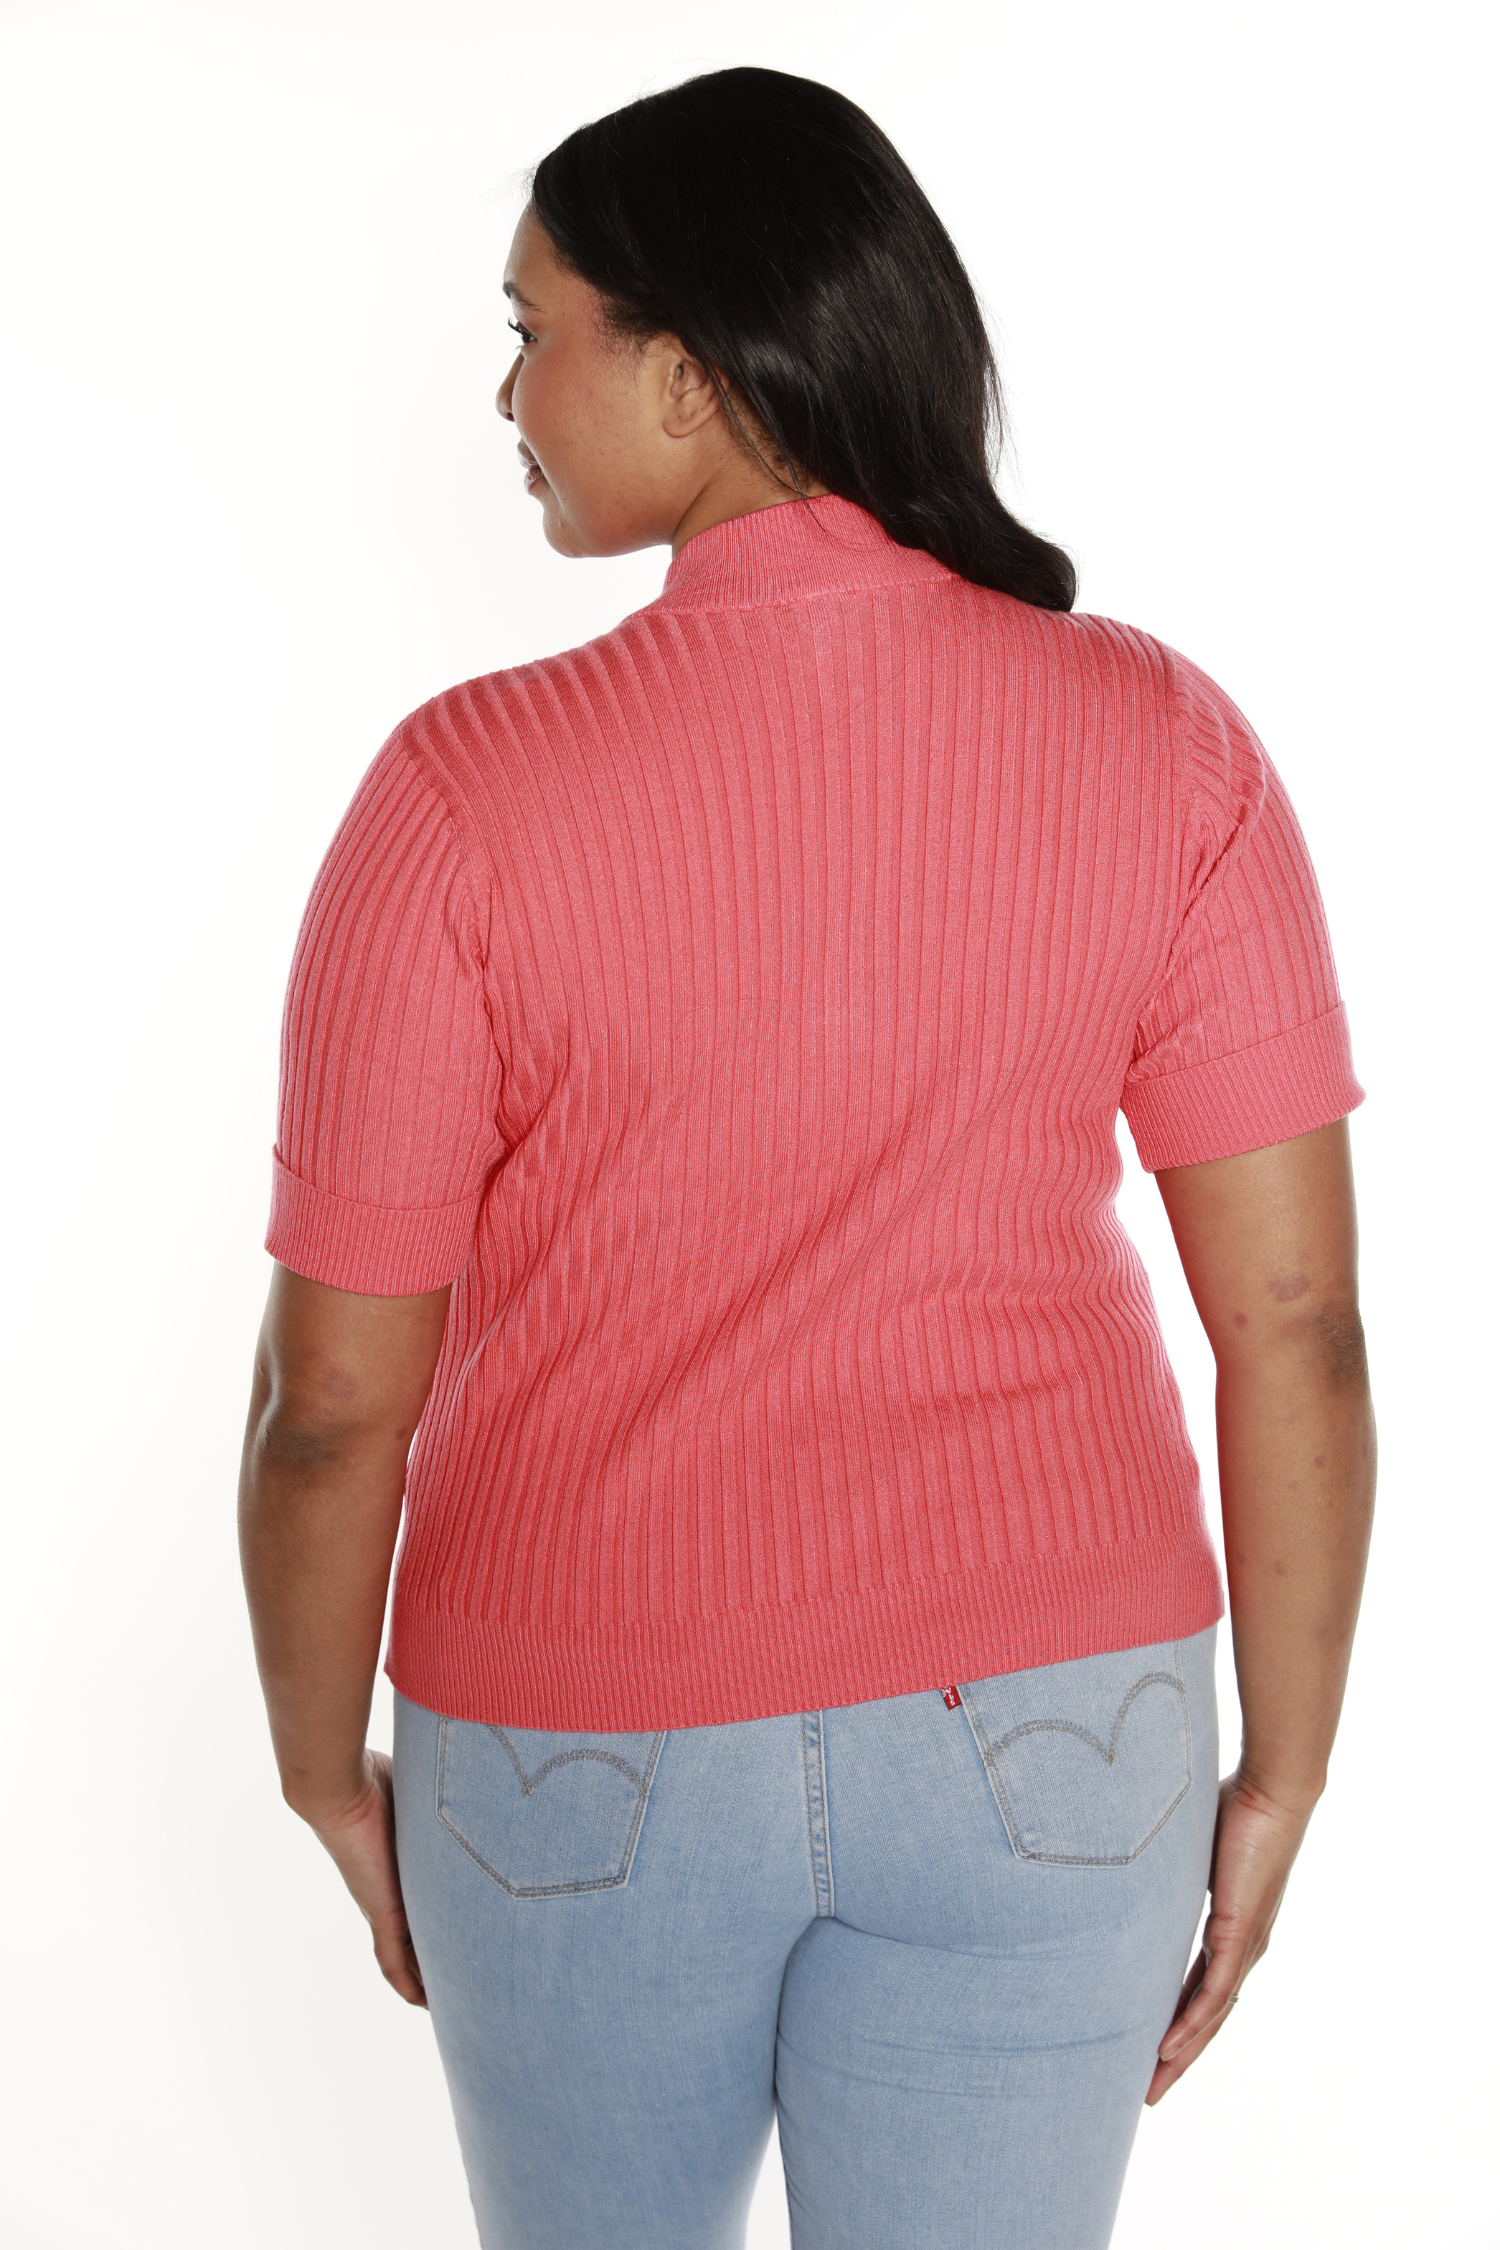 Jersey tipo jersey para mujer con cremallera frontal en punto acanalado | con curvas